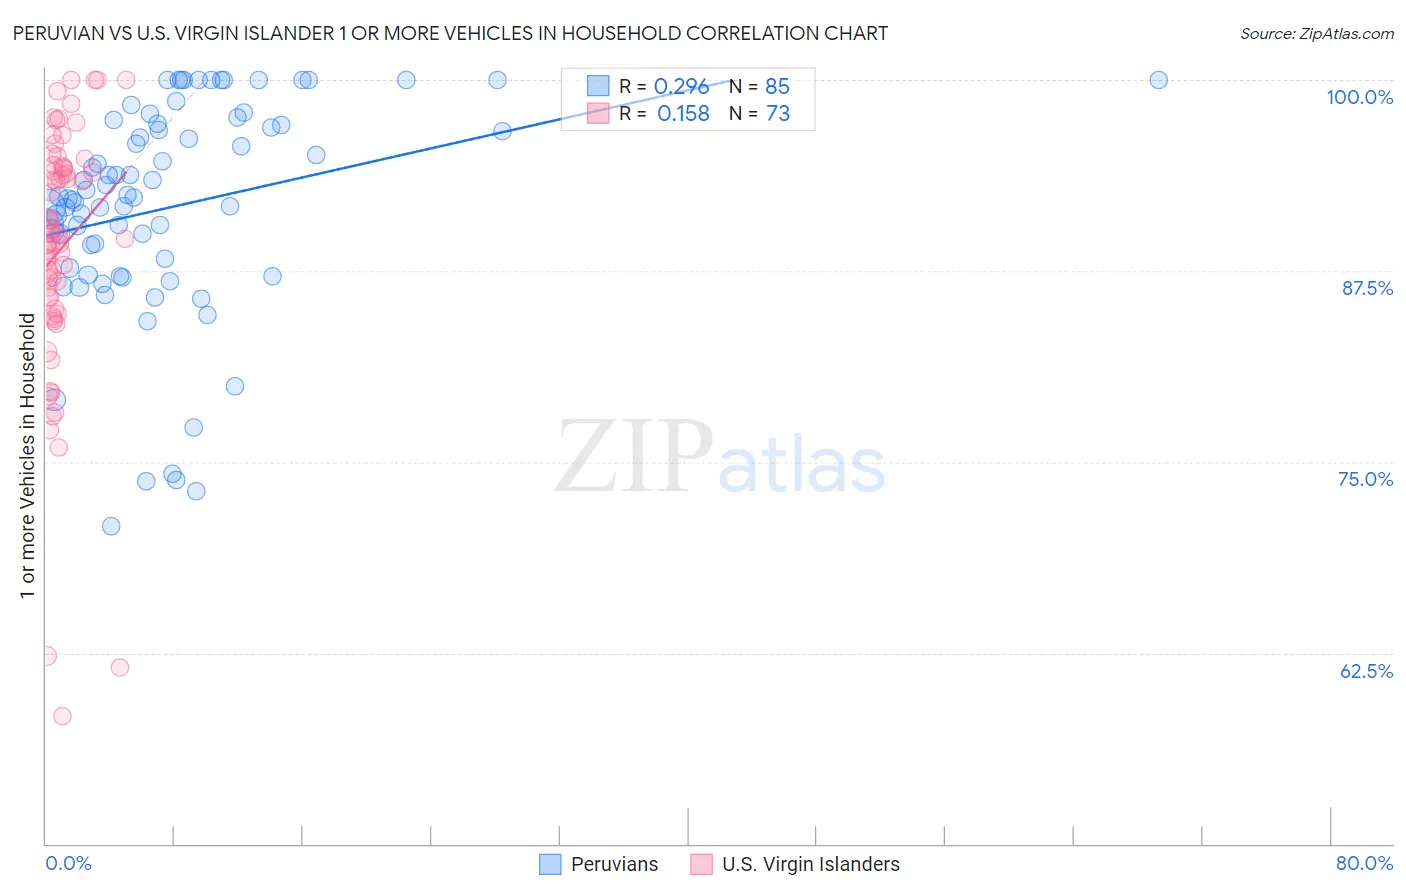 Peruvian vs U.S. Virgin Islander 1 or more Vehicles in Household